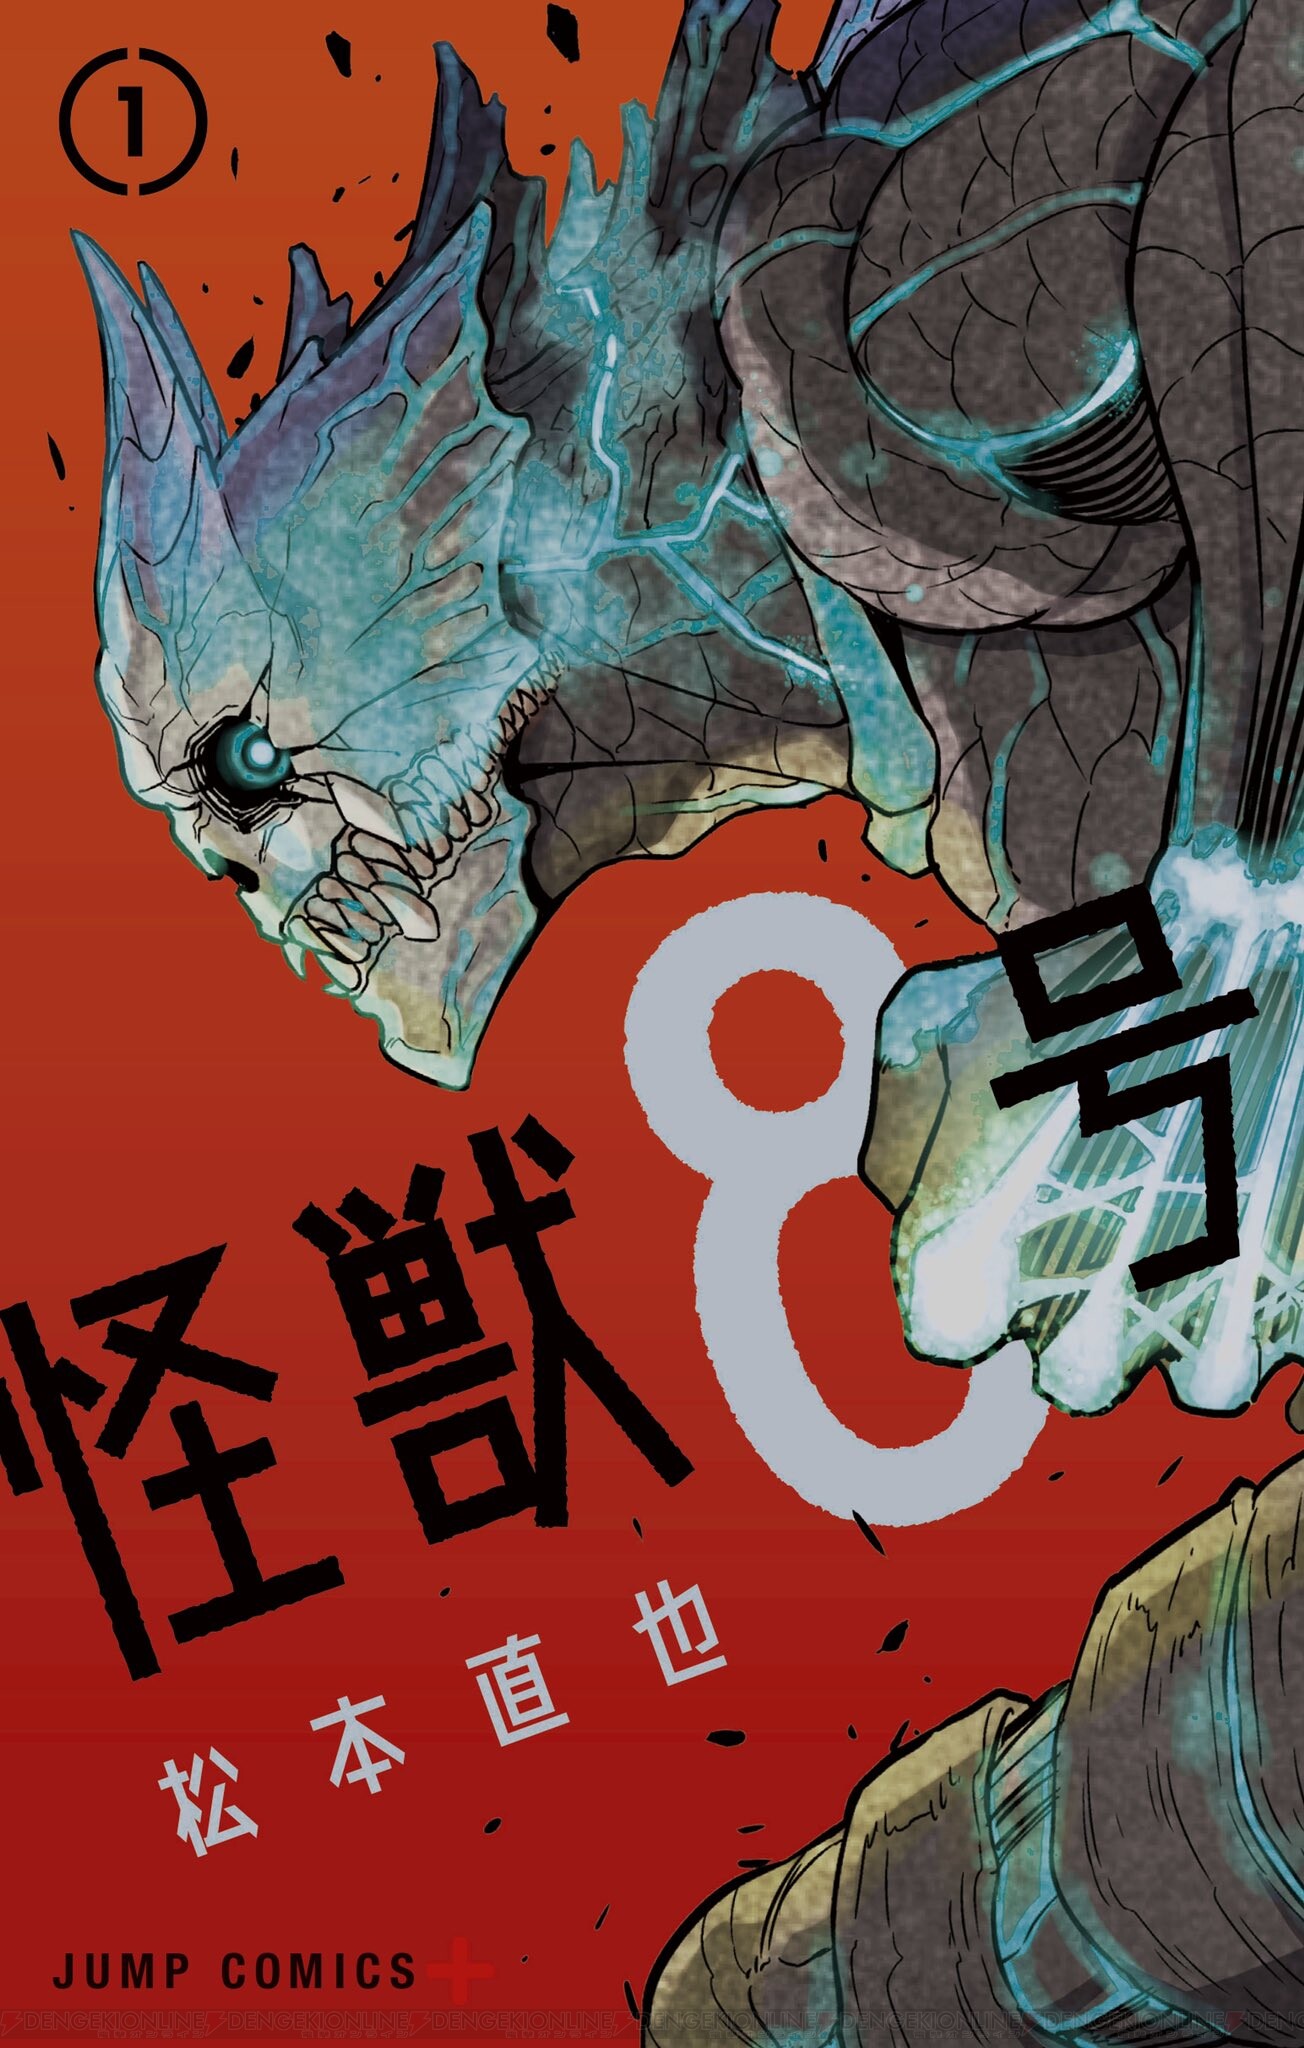 コミックス 怪獣8号 1巻が本日発売 王道でスカッとするバトル巨編 電撃オンライン